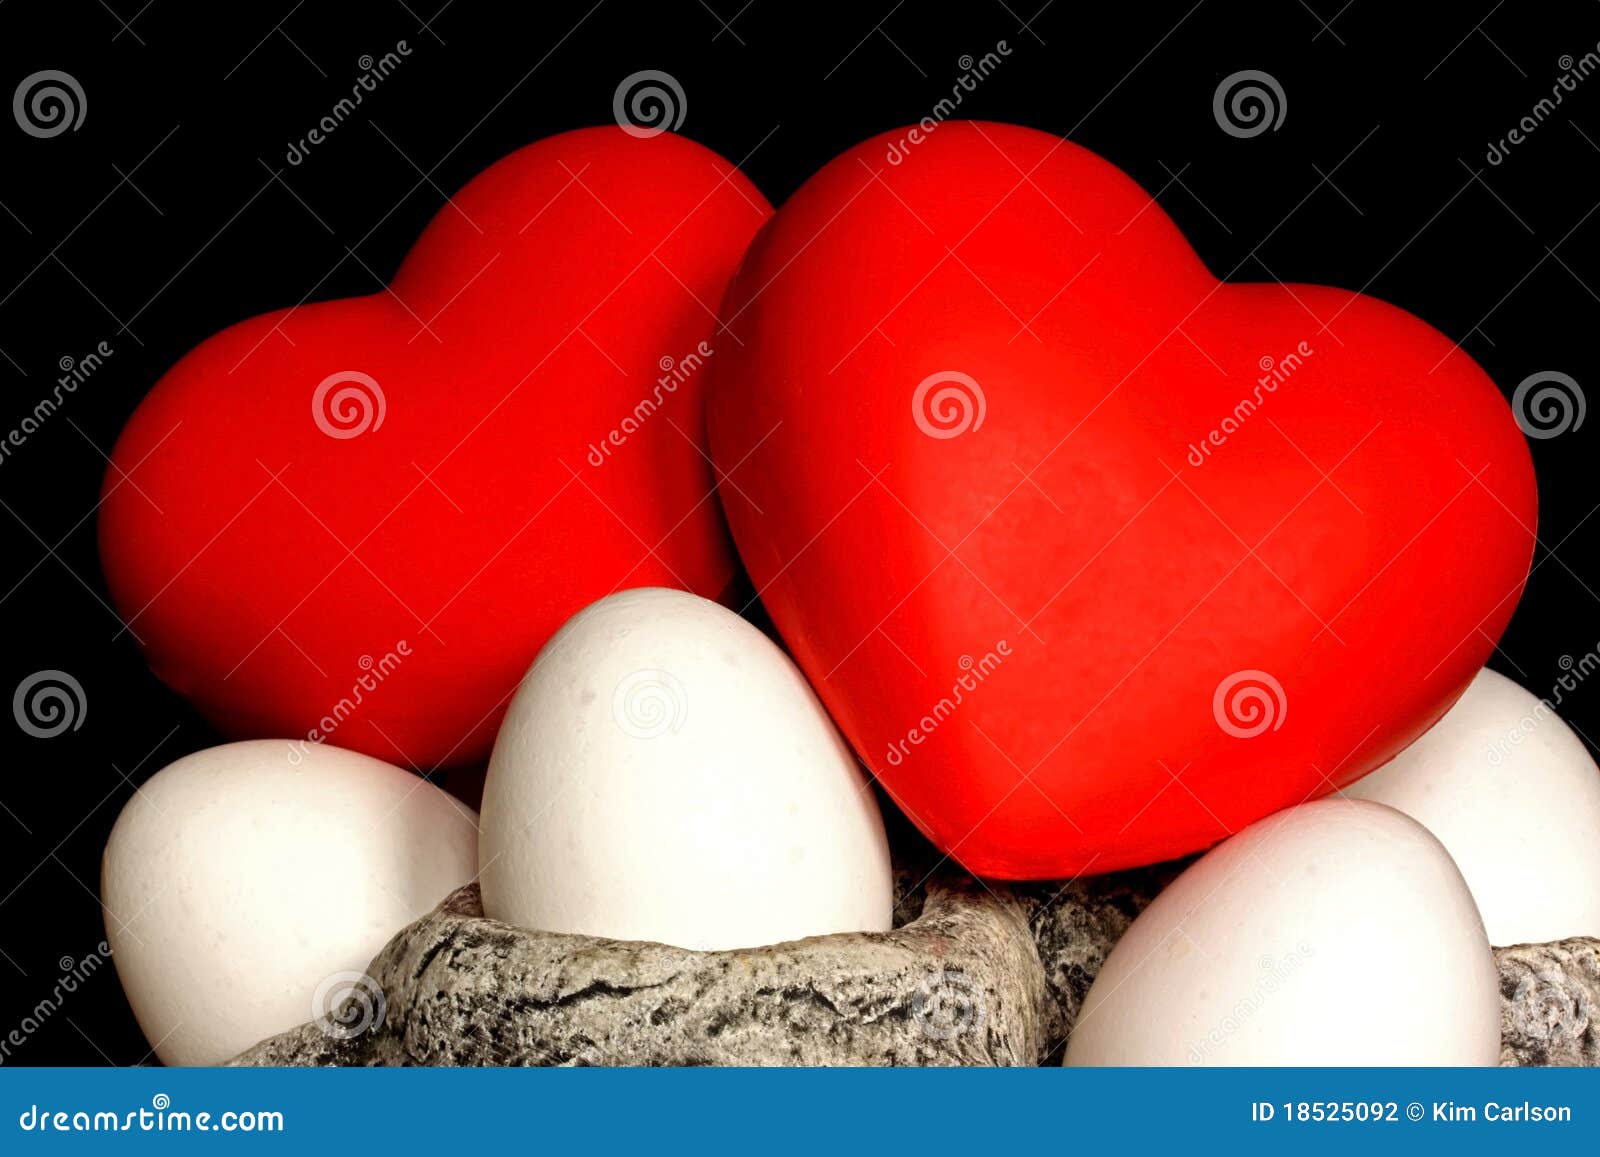 Symboles voor liefde en het leven. De harten zijn symboles voor liefde, de eieren voor het begin van het leven.